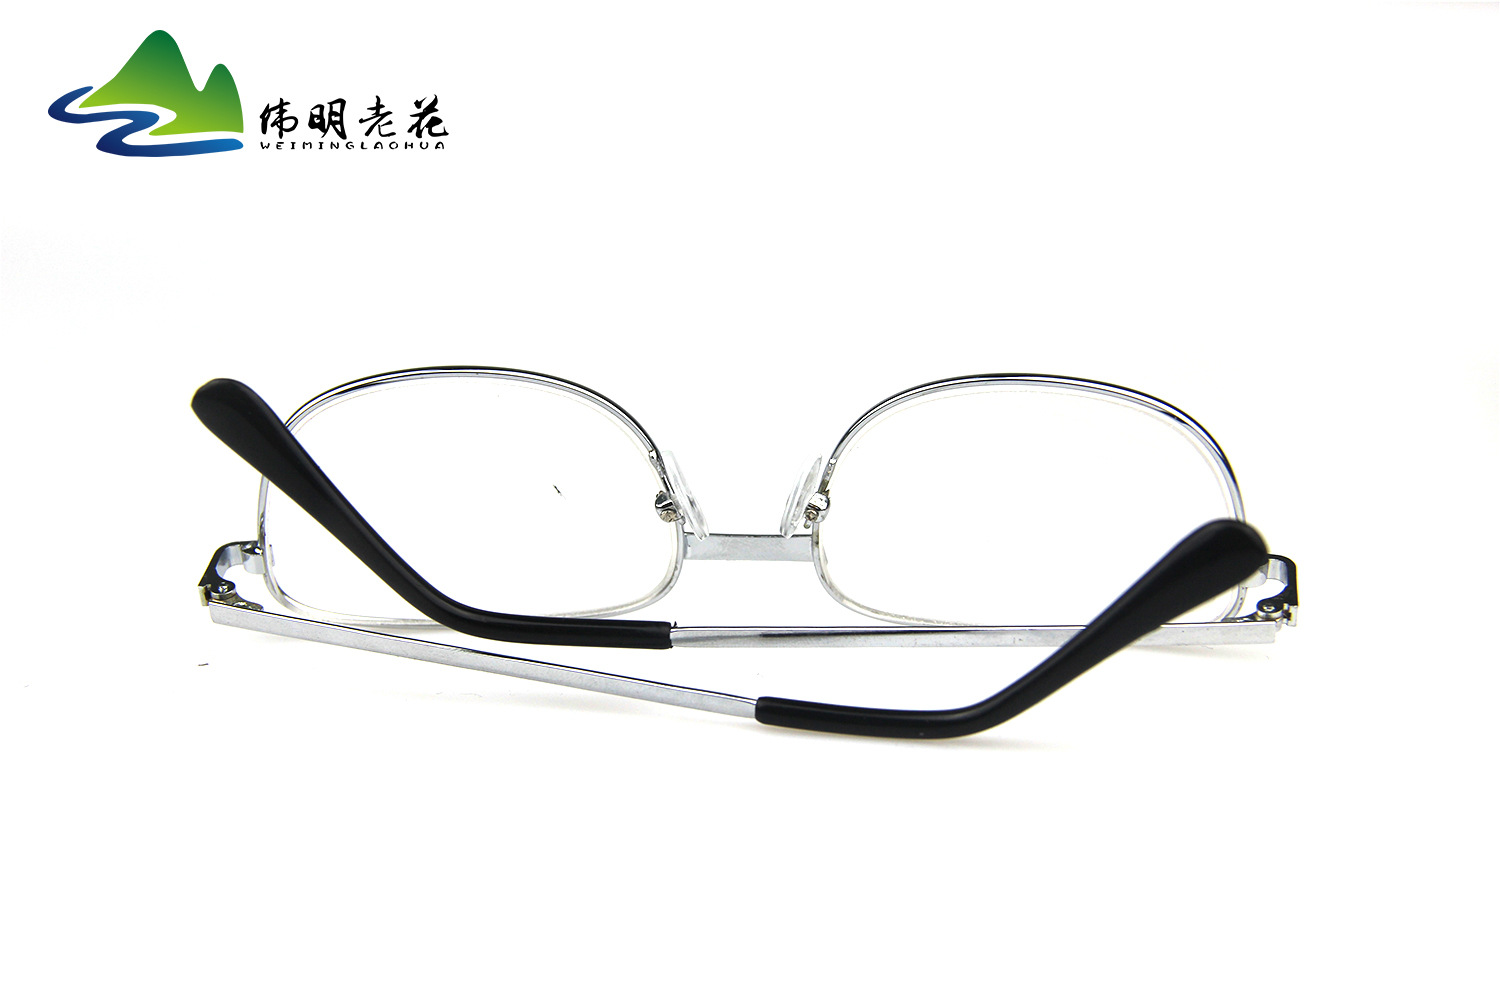 Montures de lunettes WEIMING VIEILLE FLEUR en Alliage cuivre-nickel - Ref 3139339 Image 10